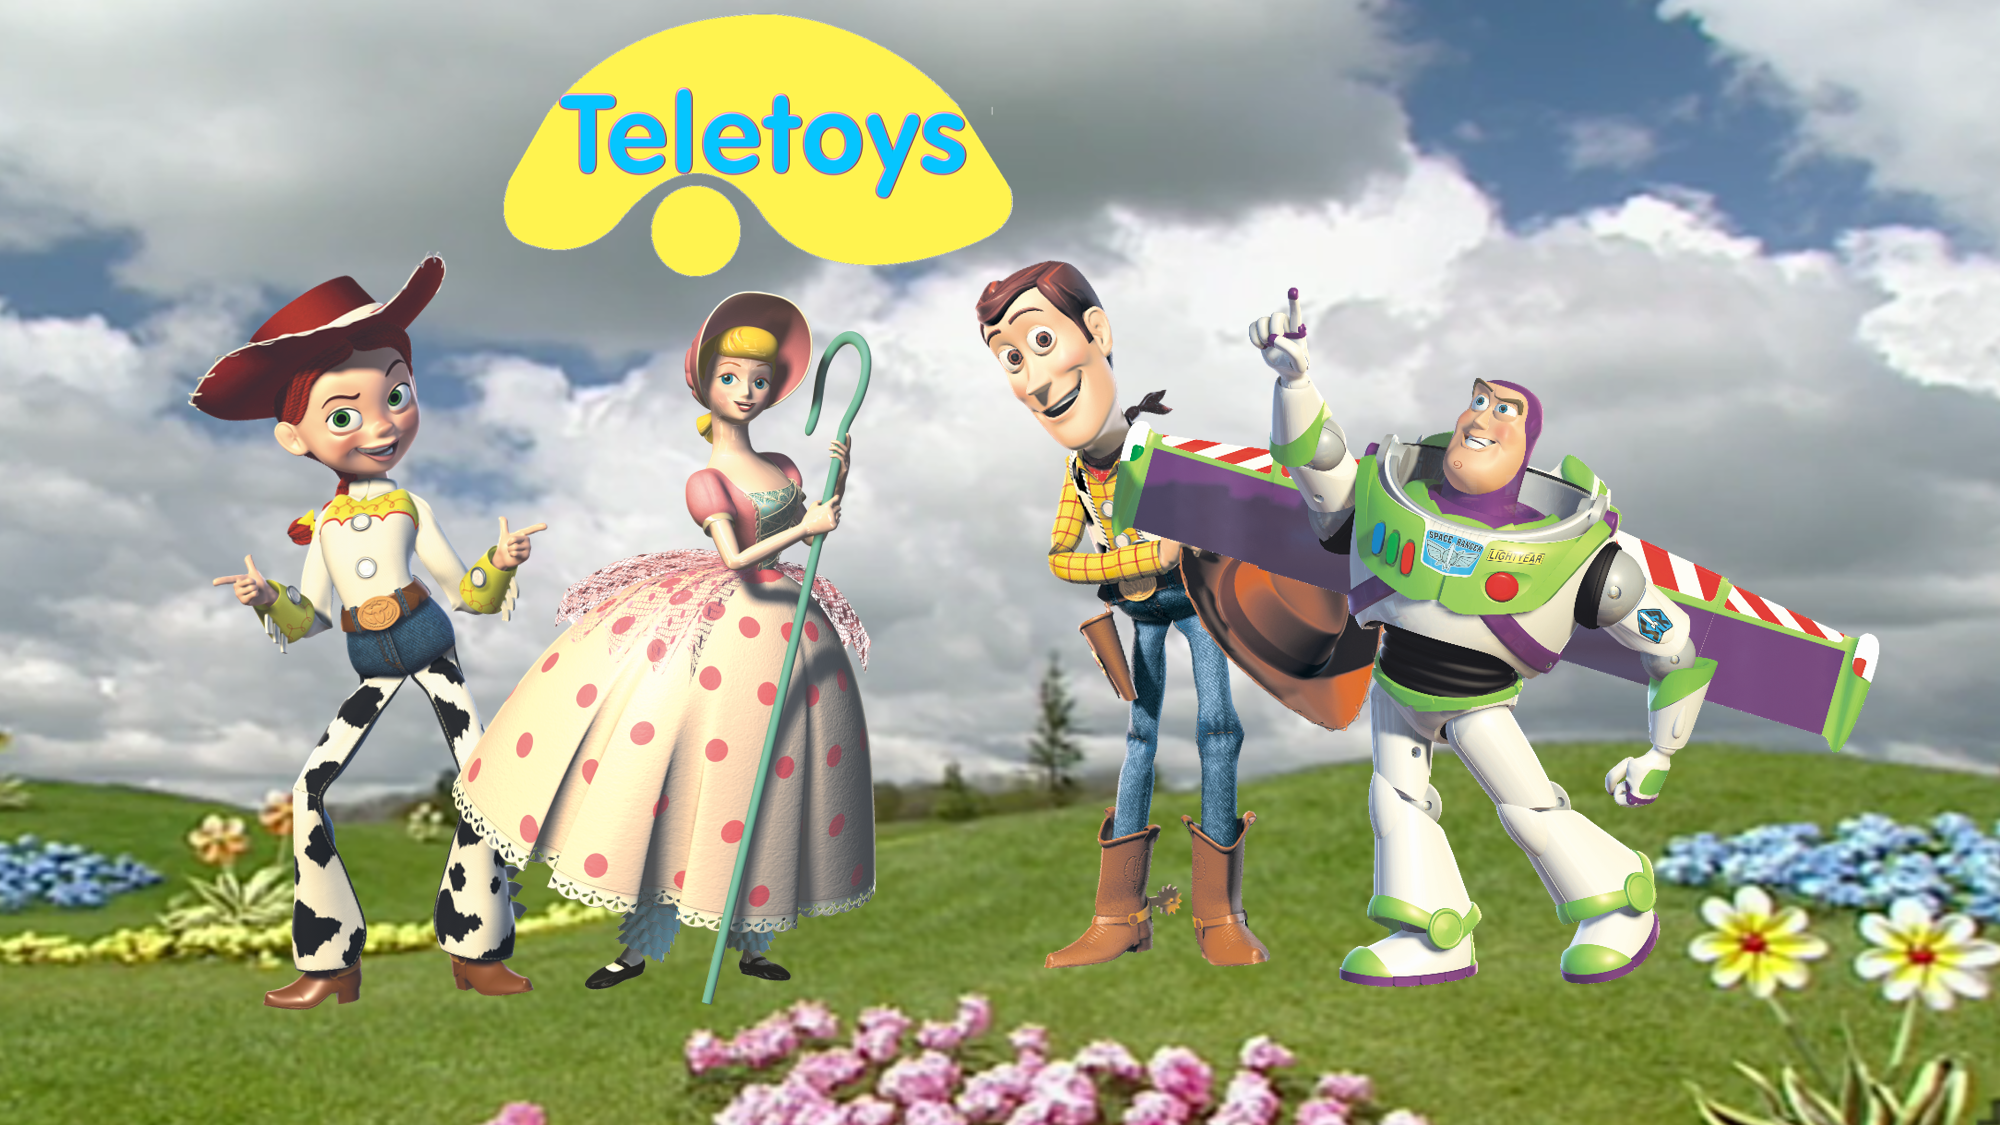 Teletoys | The Parody Wiki | Fandom